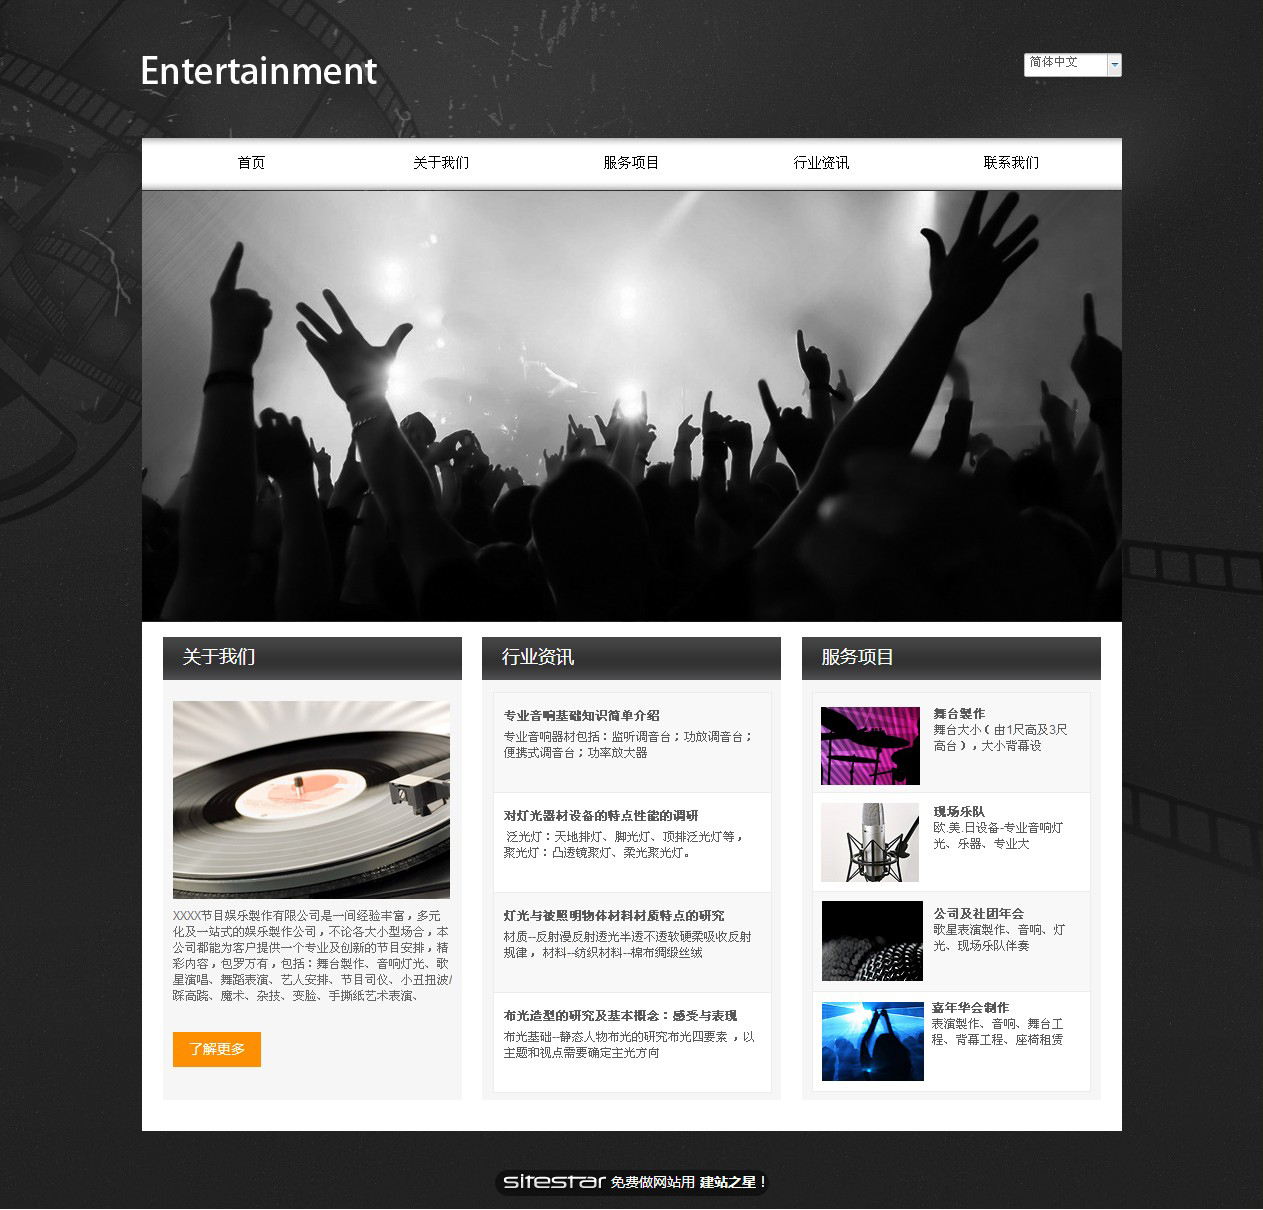 娱乐、休闲网站模板-entertainment-5